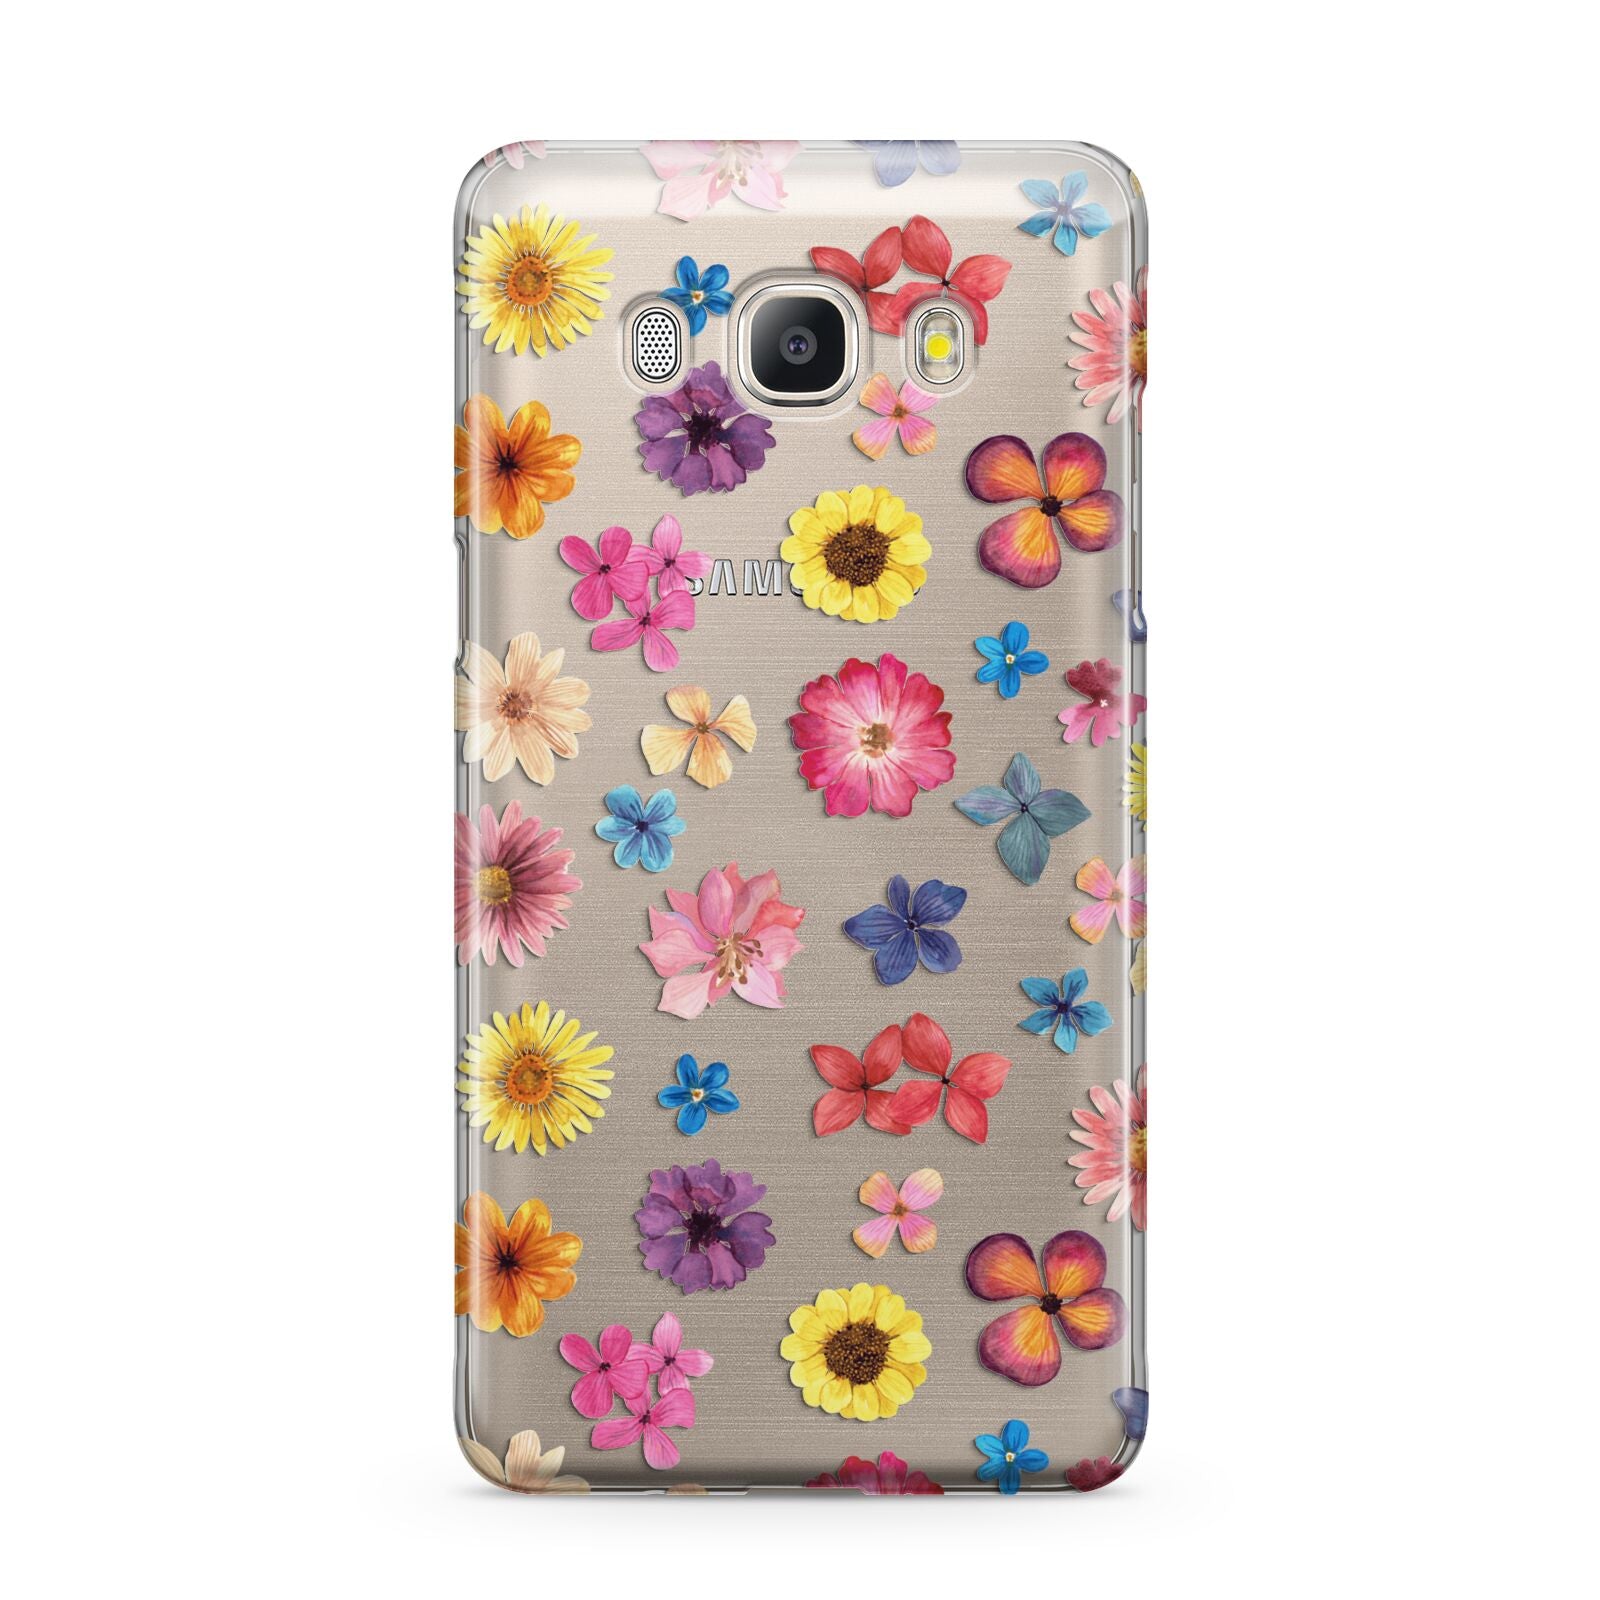 Summer Floral Samsung Galaxy J5 2016 Case